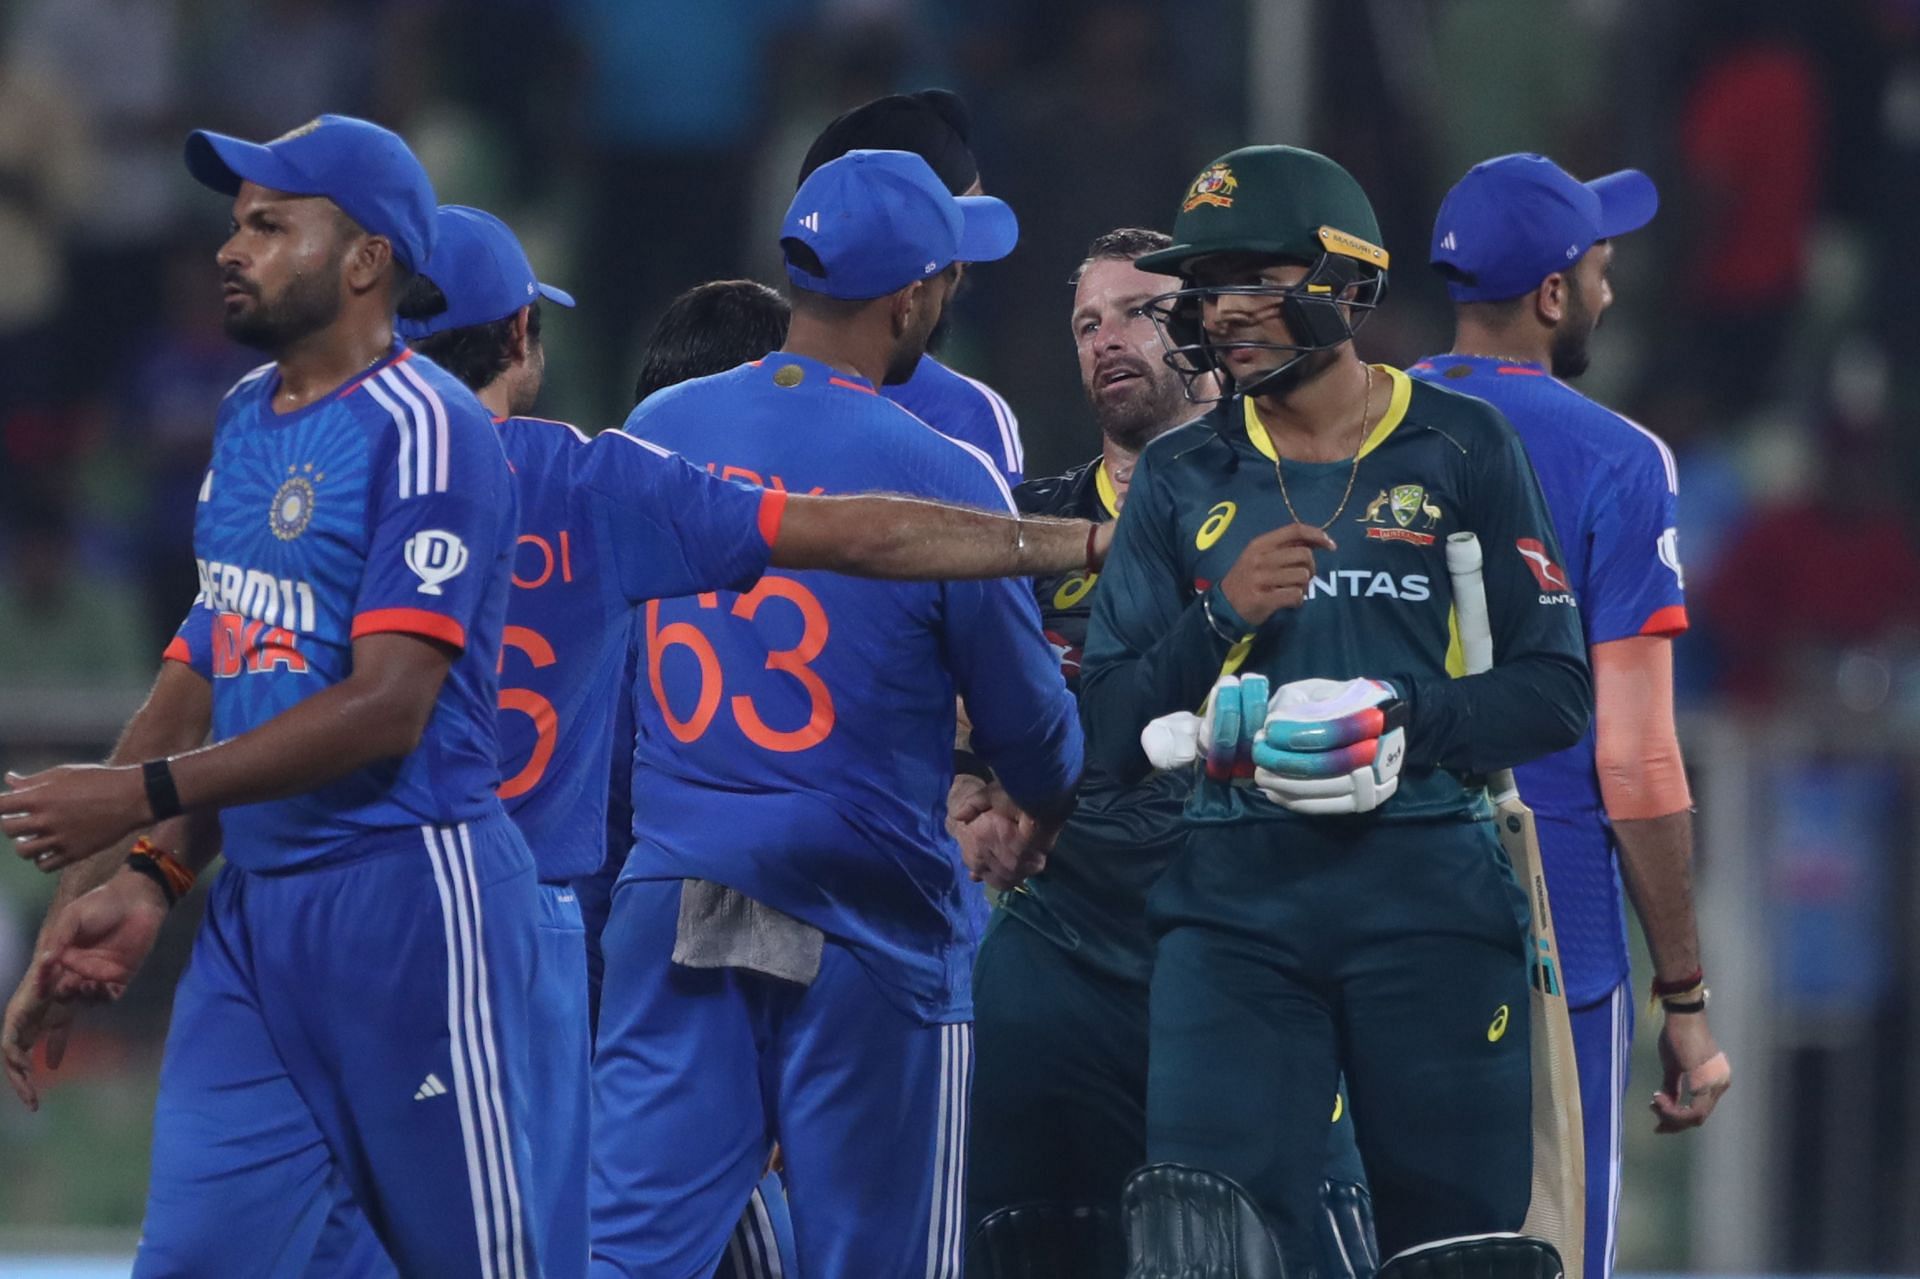 India v Australia - T20I Series: Game 2